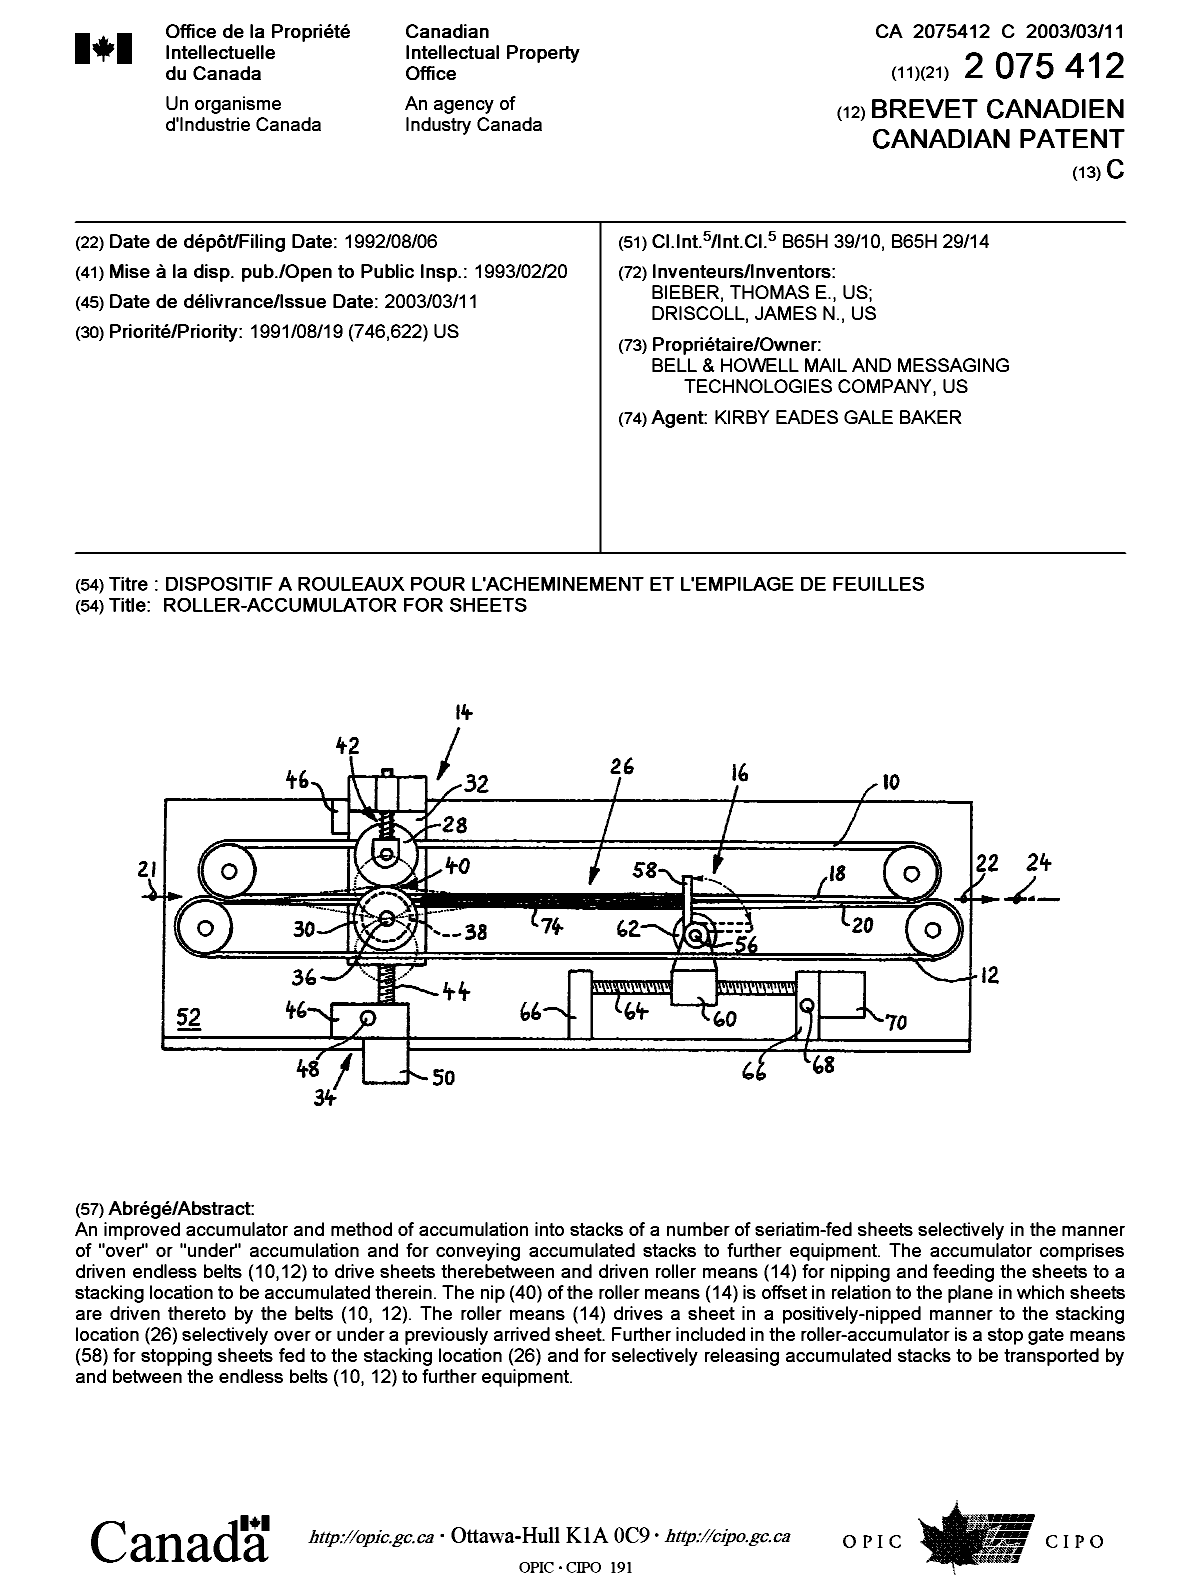 Document de brevet canadien 2075412. Page couverture 20030506. Image 1 de 1